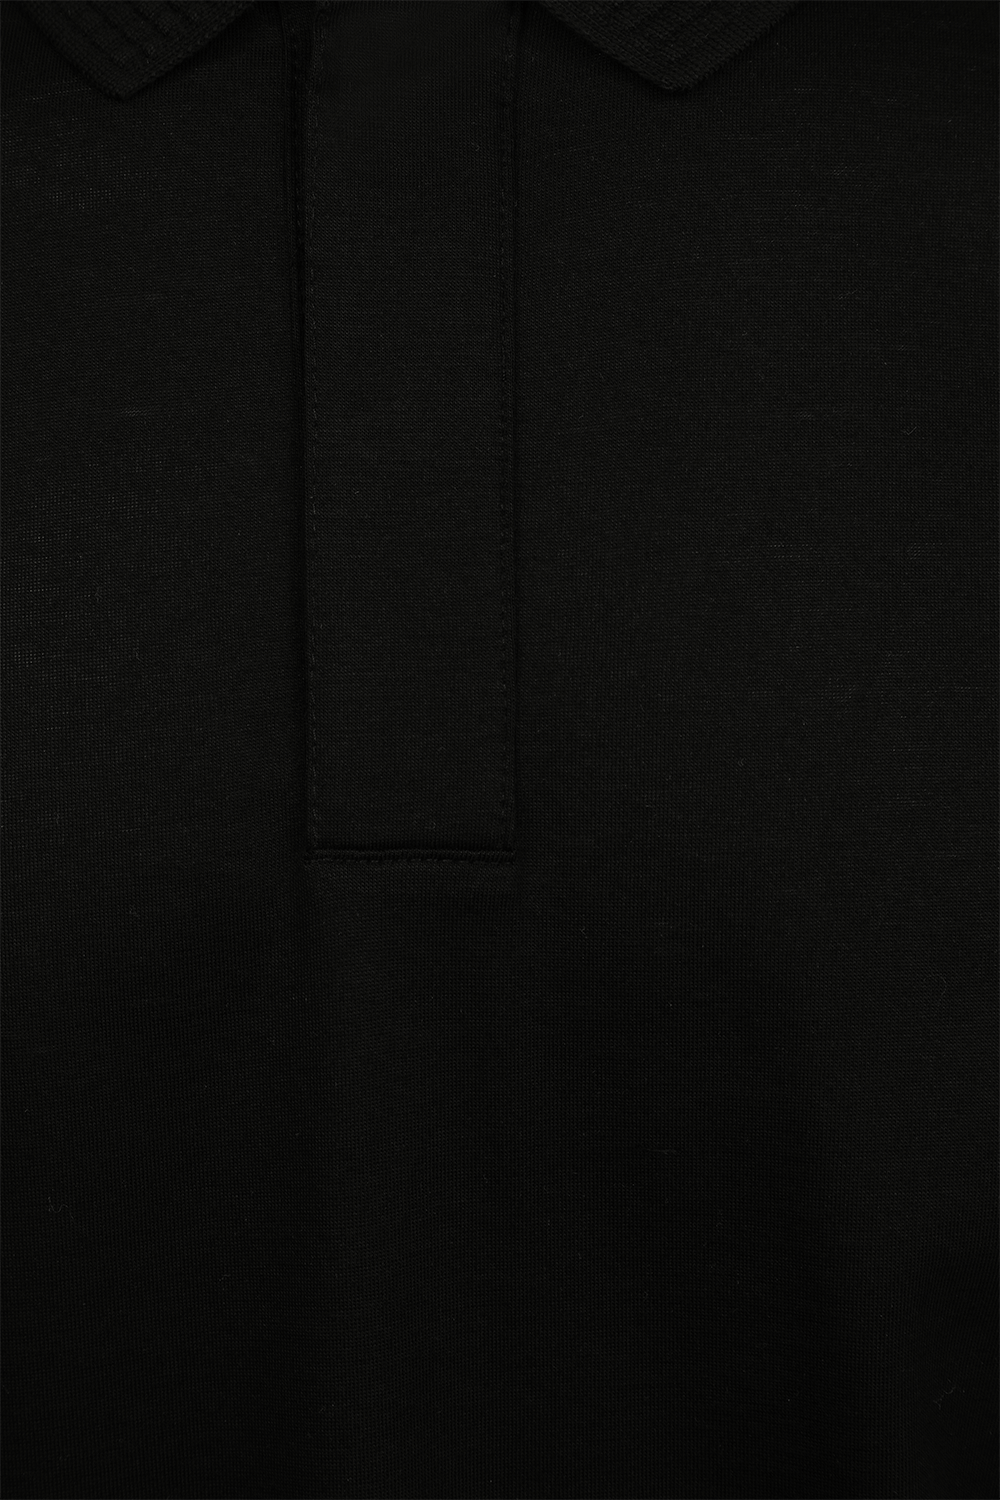 חולצת פולו בגזרת סלים עם שרוולים ארוכים בצבע שחור BOSS